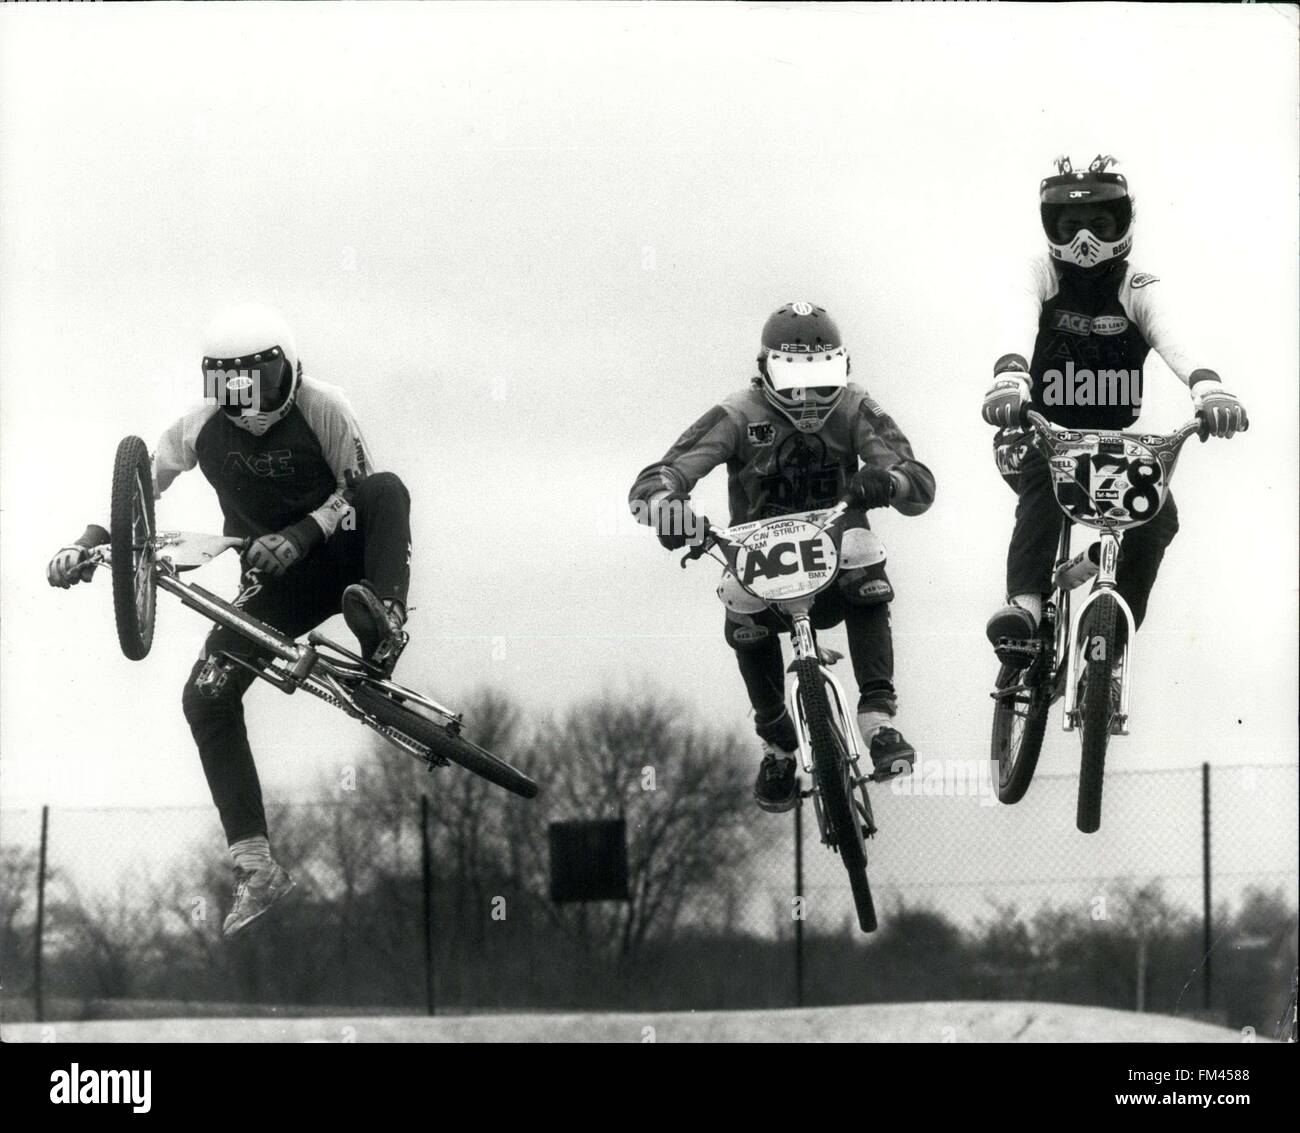 1982 - BMX startet durch! Sie fliegen durch die Luft mit der größten Leichtigkeit, diese herrlichen Männer und ihre fliegenden Kisten-außer in diesem Fall die Maschinen keine Flügel und zwei Räder haben und sind in der Regel eine streng Forschungszentrum gebundener Form des Verkehrs. Aber wenn Team Ace einem Schritt ihre Sättel, du wirst glauben ein Fahrrad kann fliegen, BMX Kurzschrift für Fahrrad, Motocross, ist der letzte Schrei, den Atlantik zu überqueren. Dieses actiongeladene Spannung pro Minute Sport macht Frisbeas, Skateboards, und Skates suchen Dulll im Vergleich. Es ist eine ernsthafte Sportart, die schnell an Fahrt gewinnt. Hier hat sie bereits eine eigene o Stockfoto